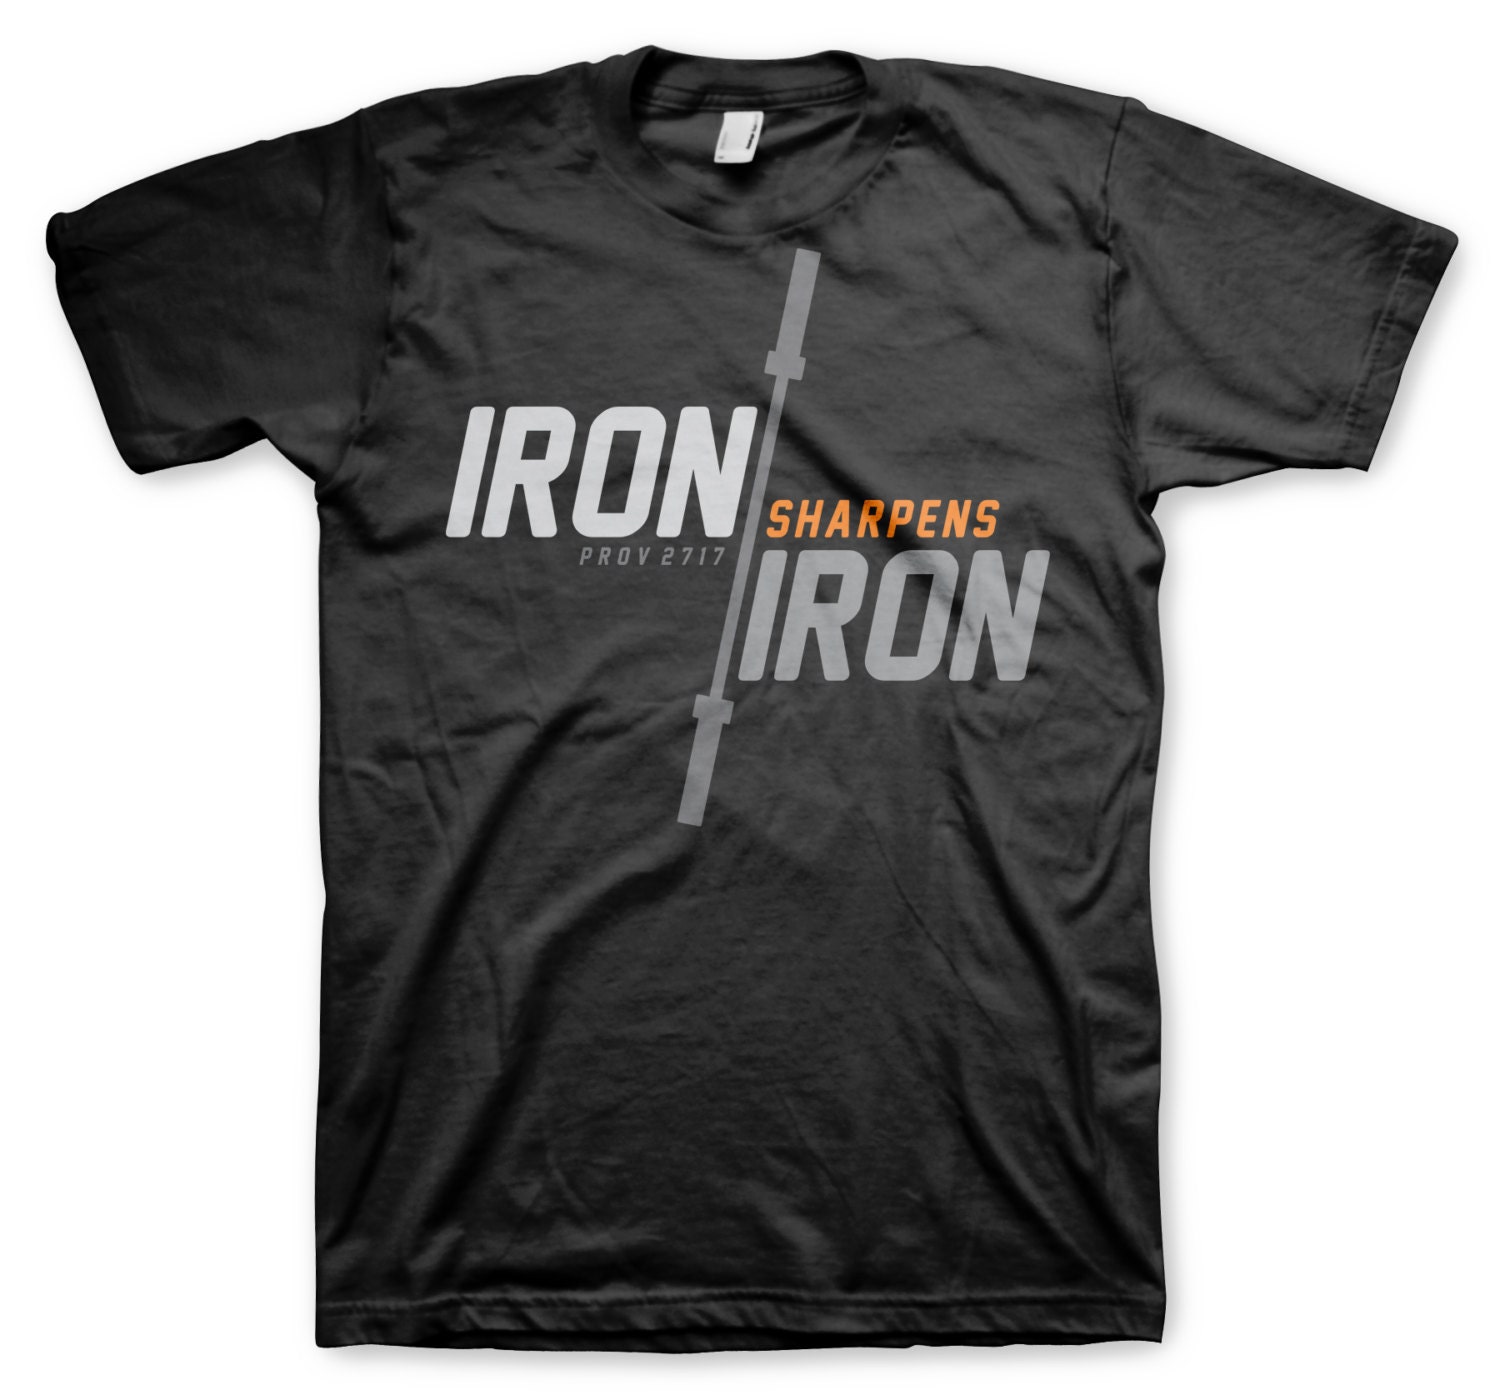 Iron Sharpens Iron shirt